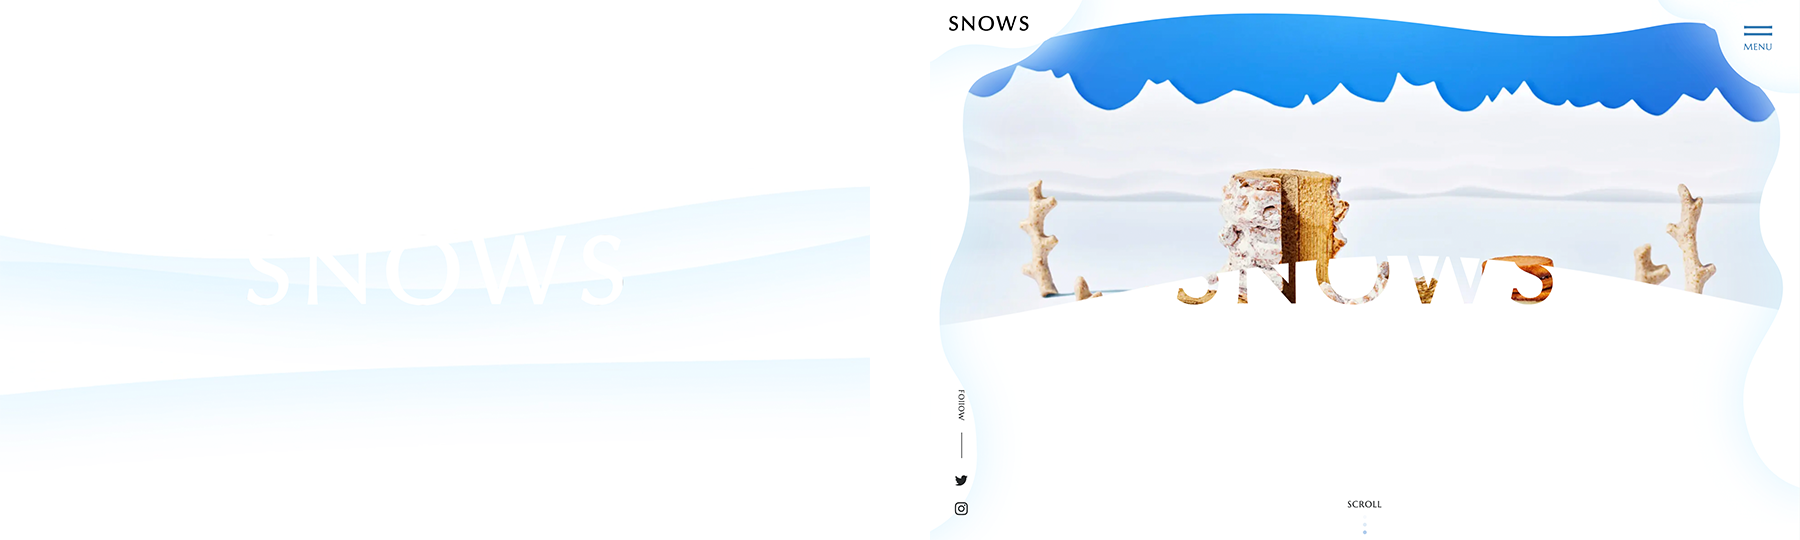 SNOWS / Brand Website